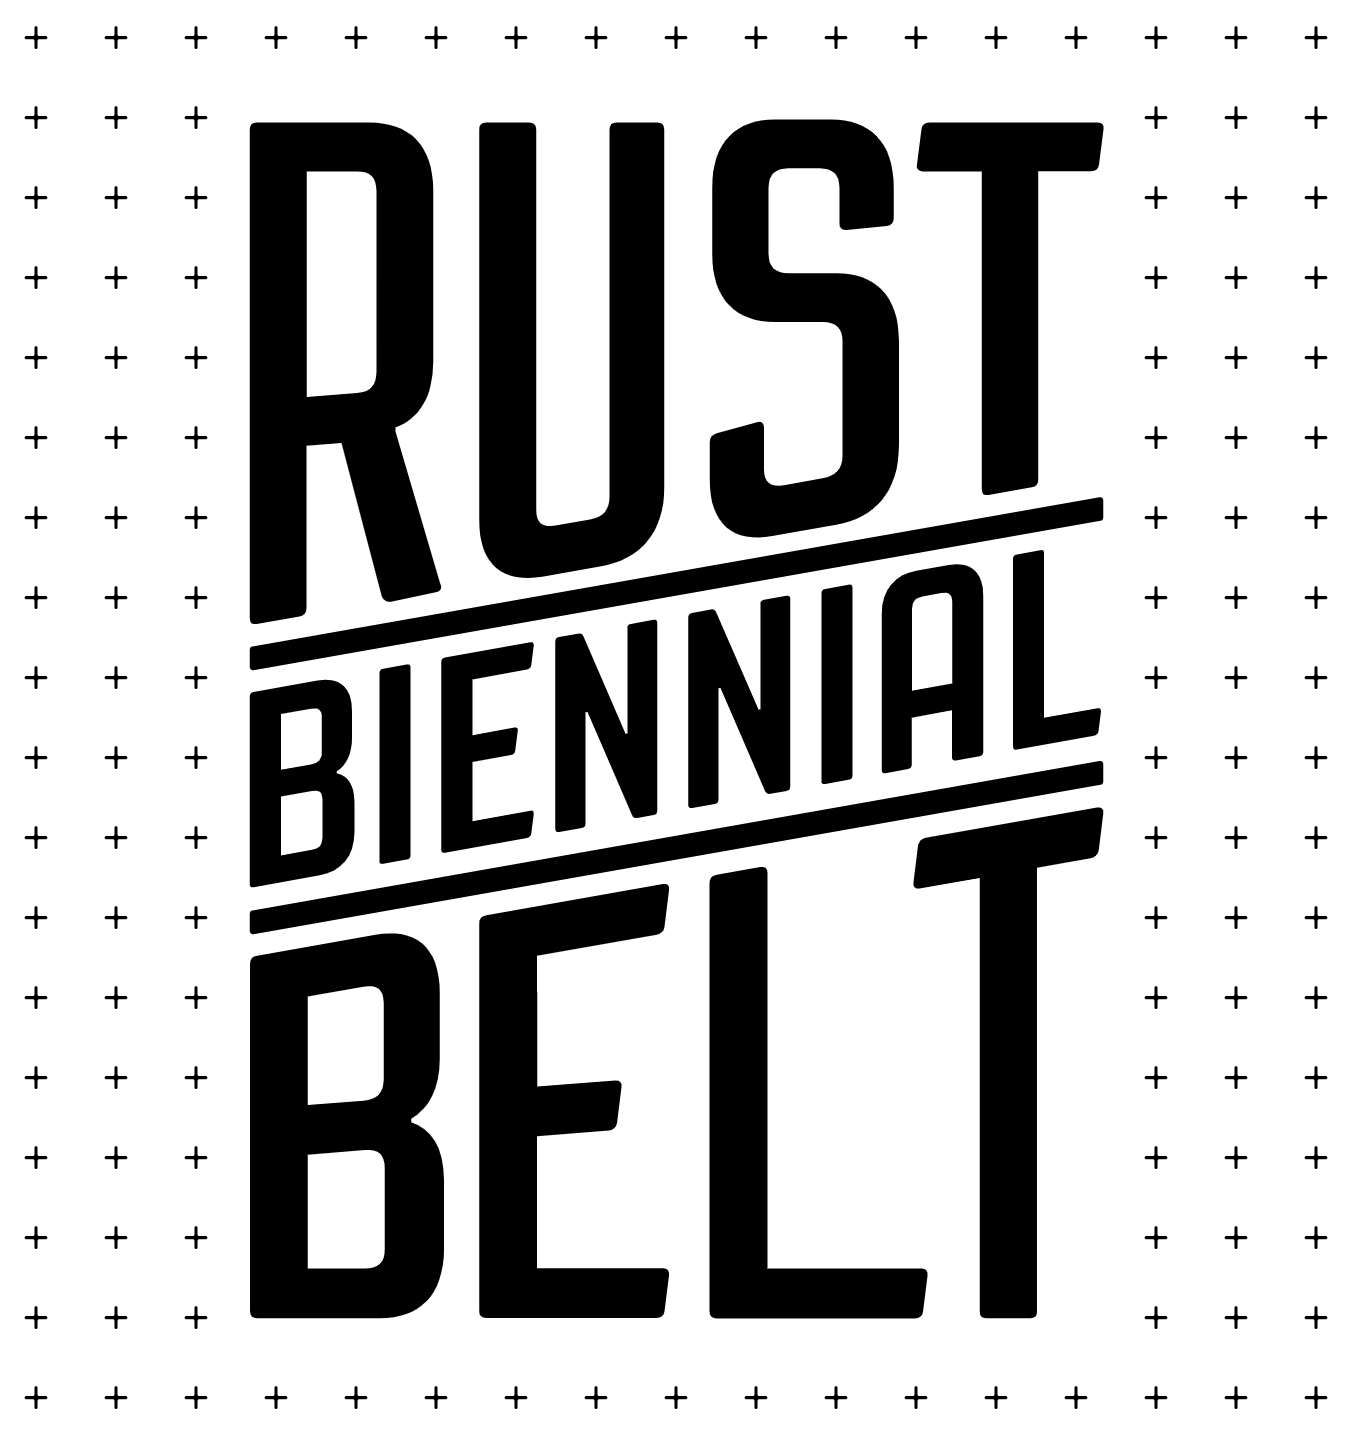 The rust belt фото 46